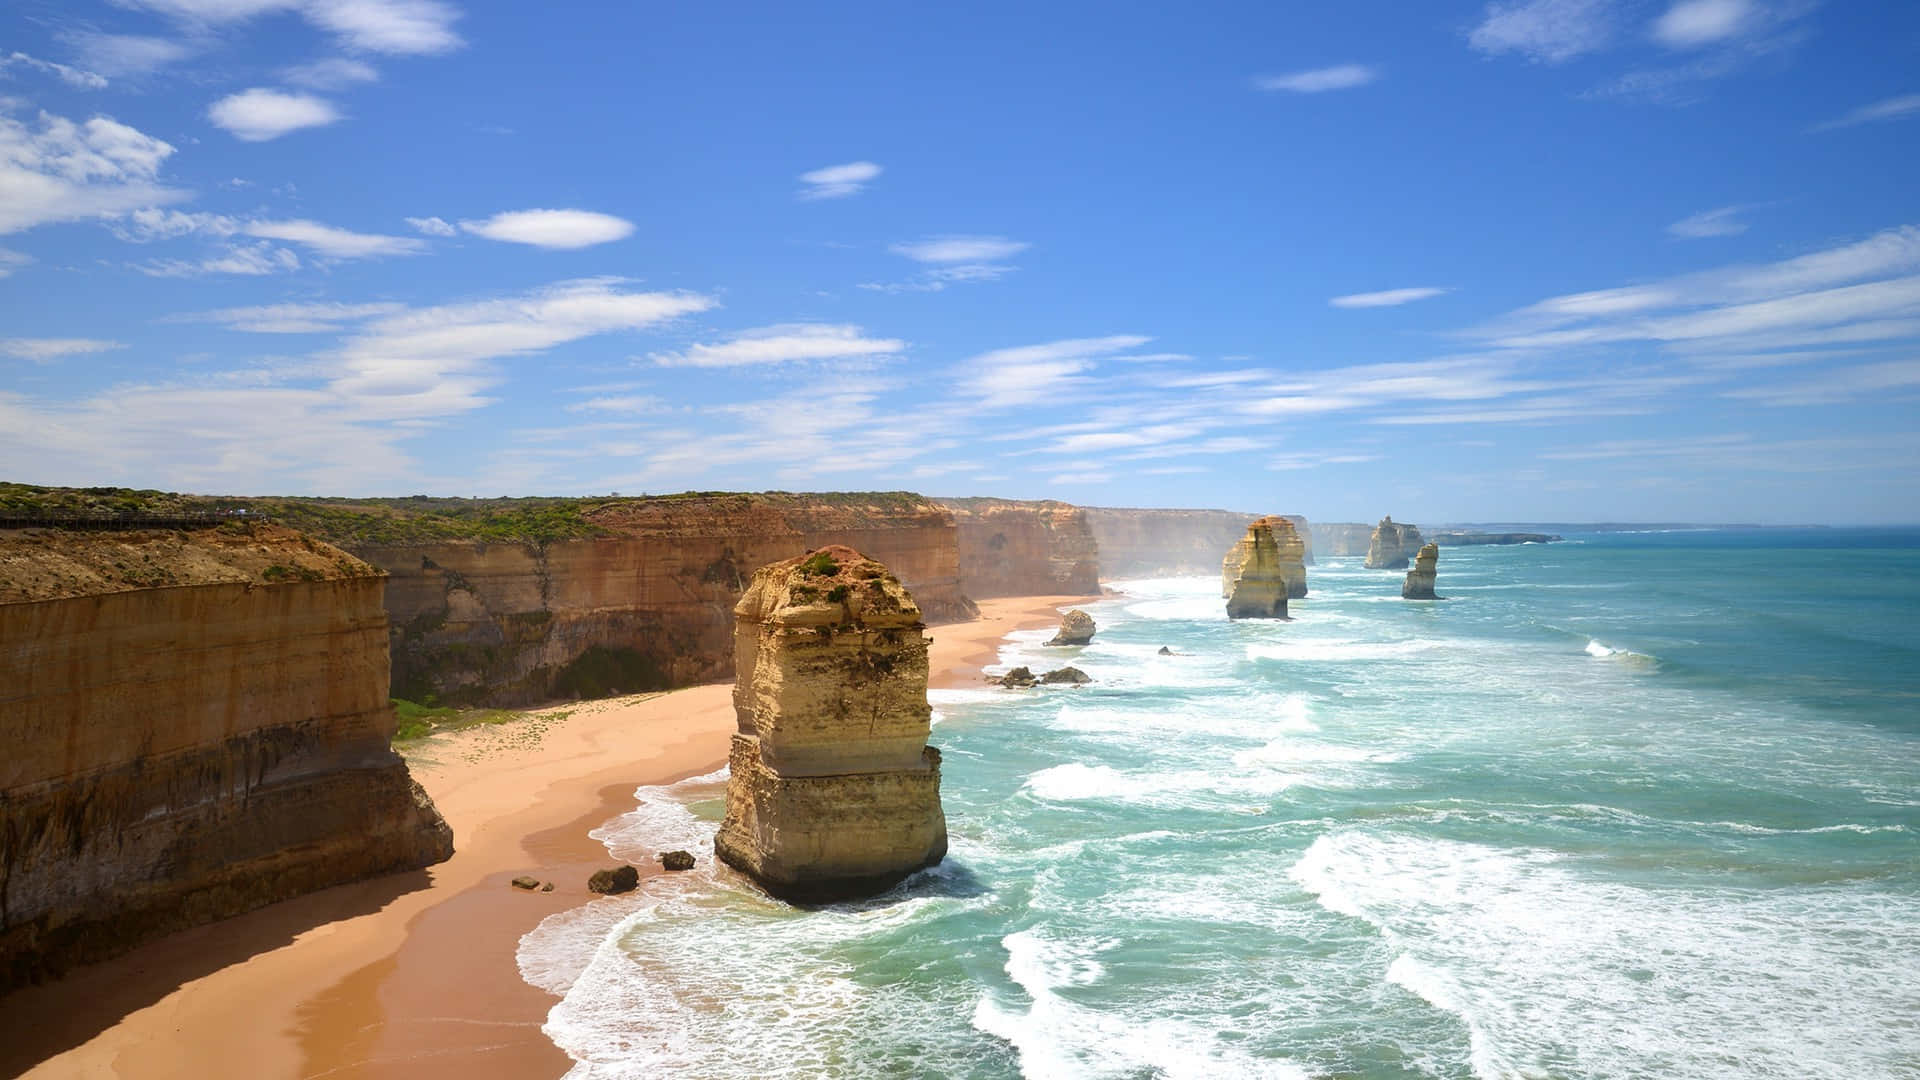 Explore the wonders of Australia